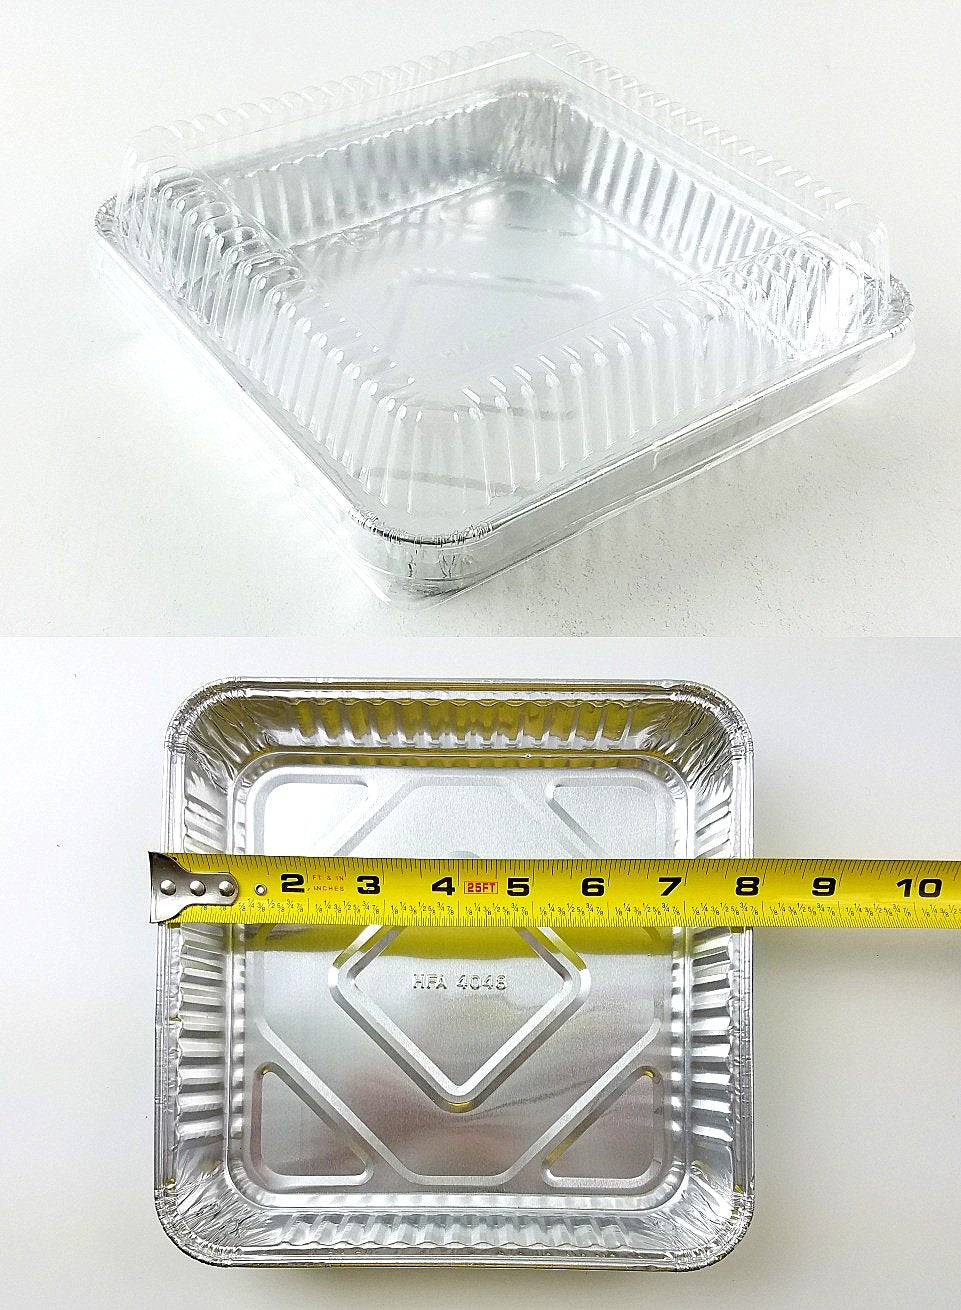 35 Pack 8x8 Inch Square Aluminum Foil Pans with Lids Disposable Baking Pans